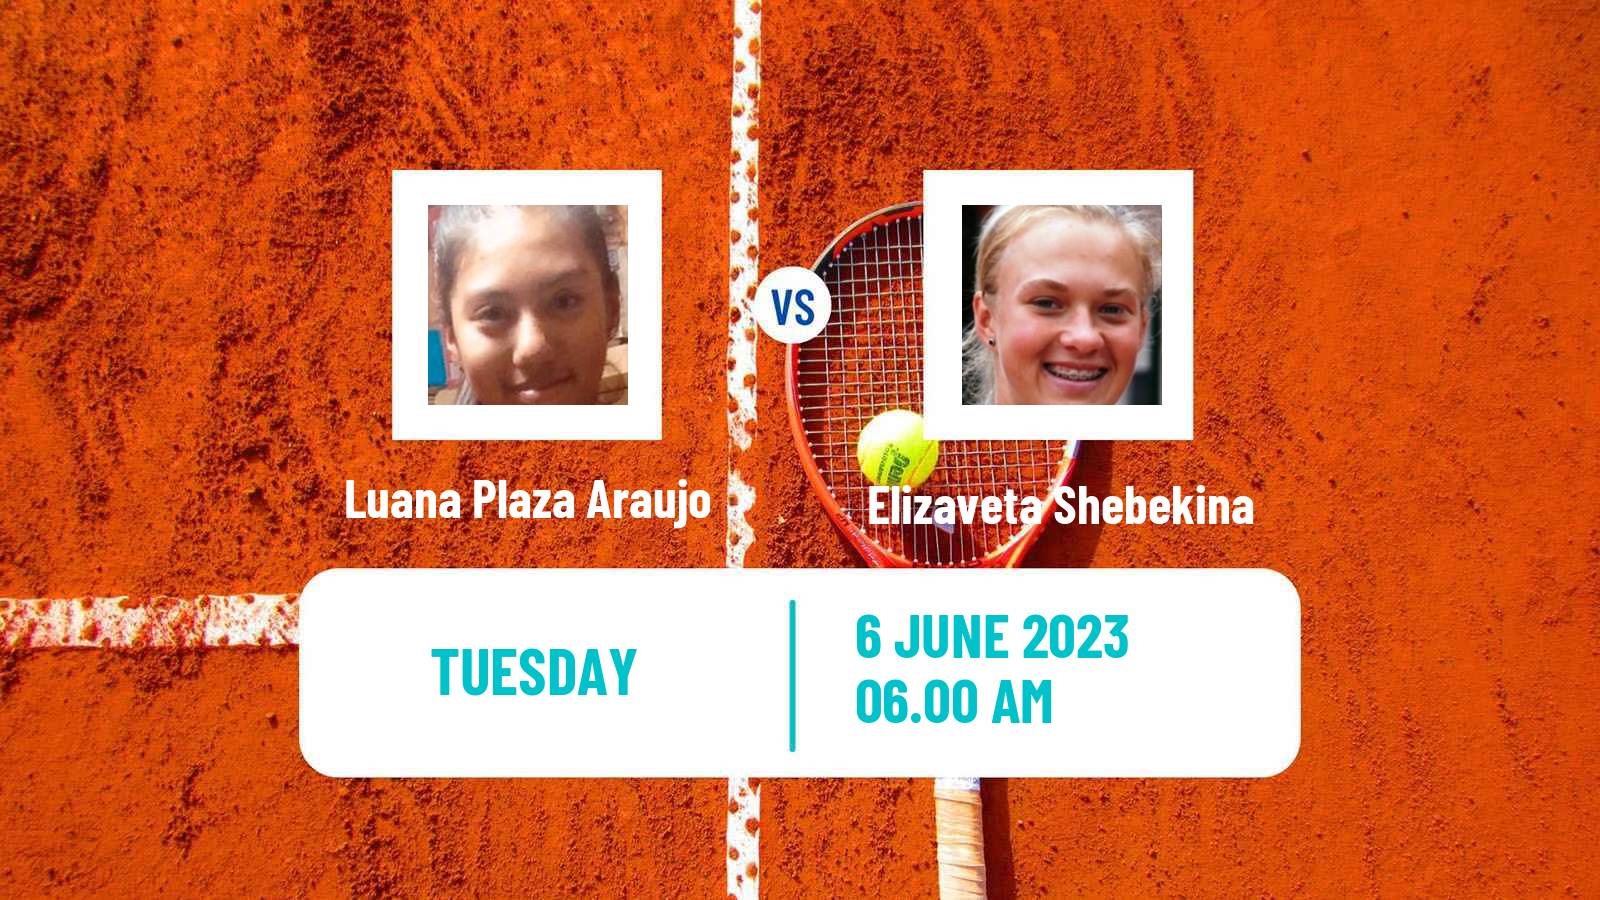 Tennis ITF W15 Monastir 18 Women 2023 Luana Plaza Araujo - Elizaveta Shebekina